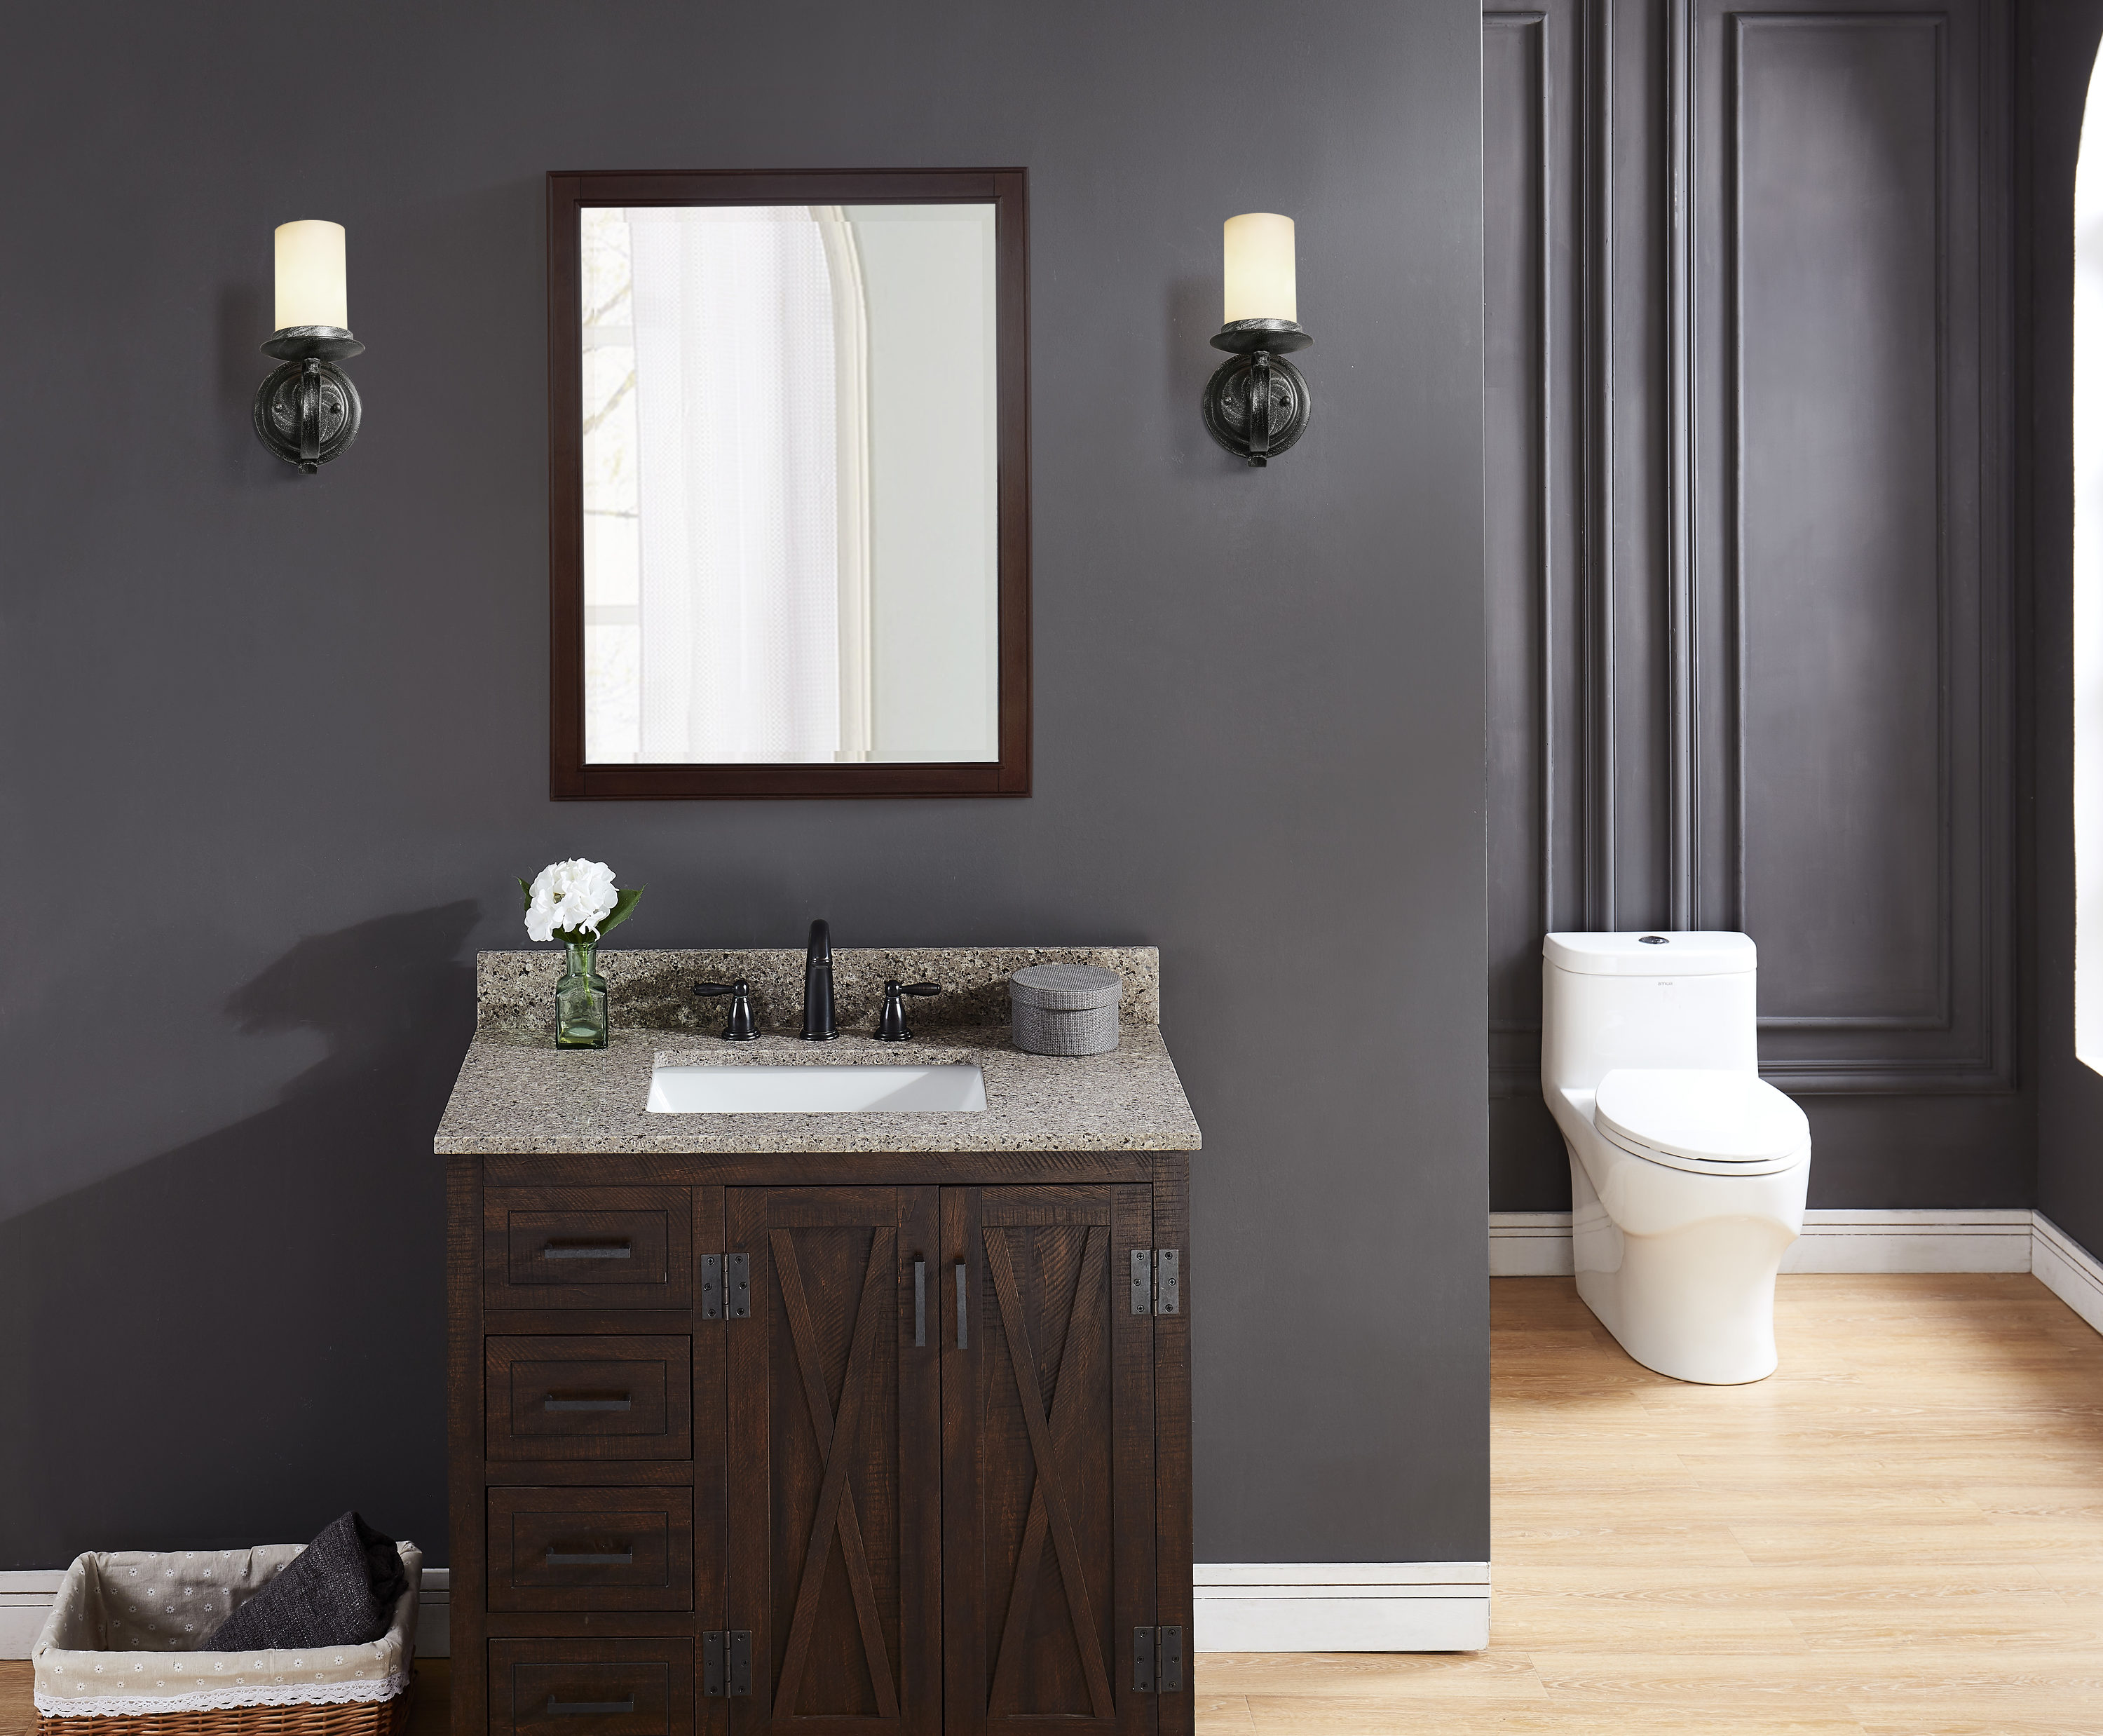 gray and brown bathroom color ideas